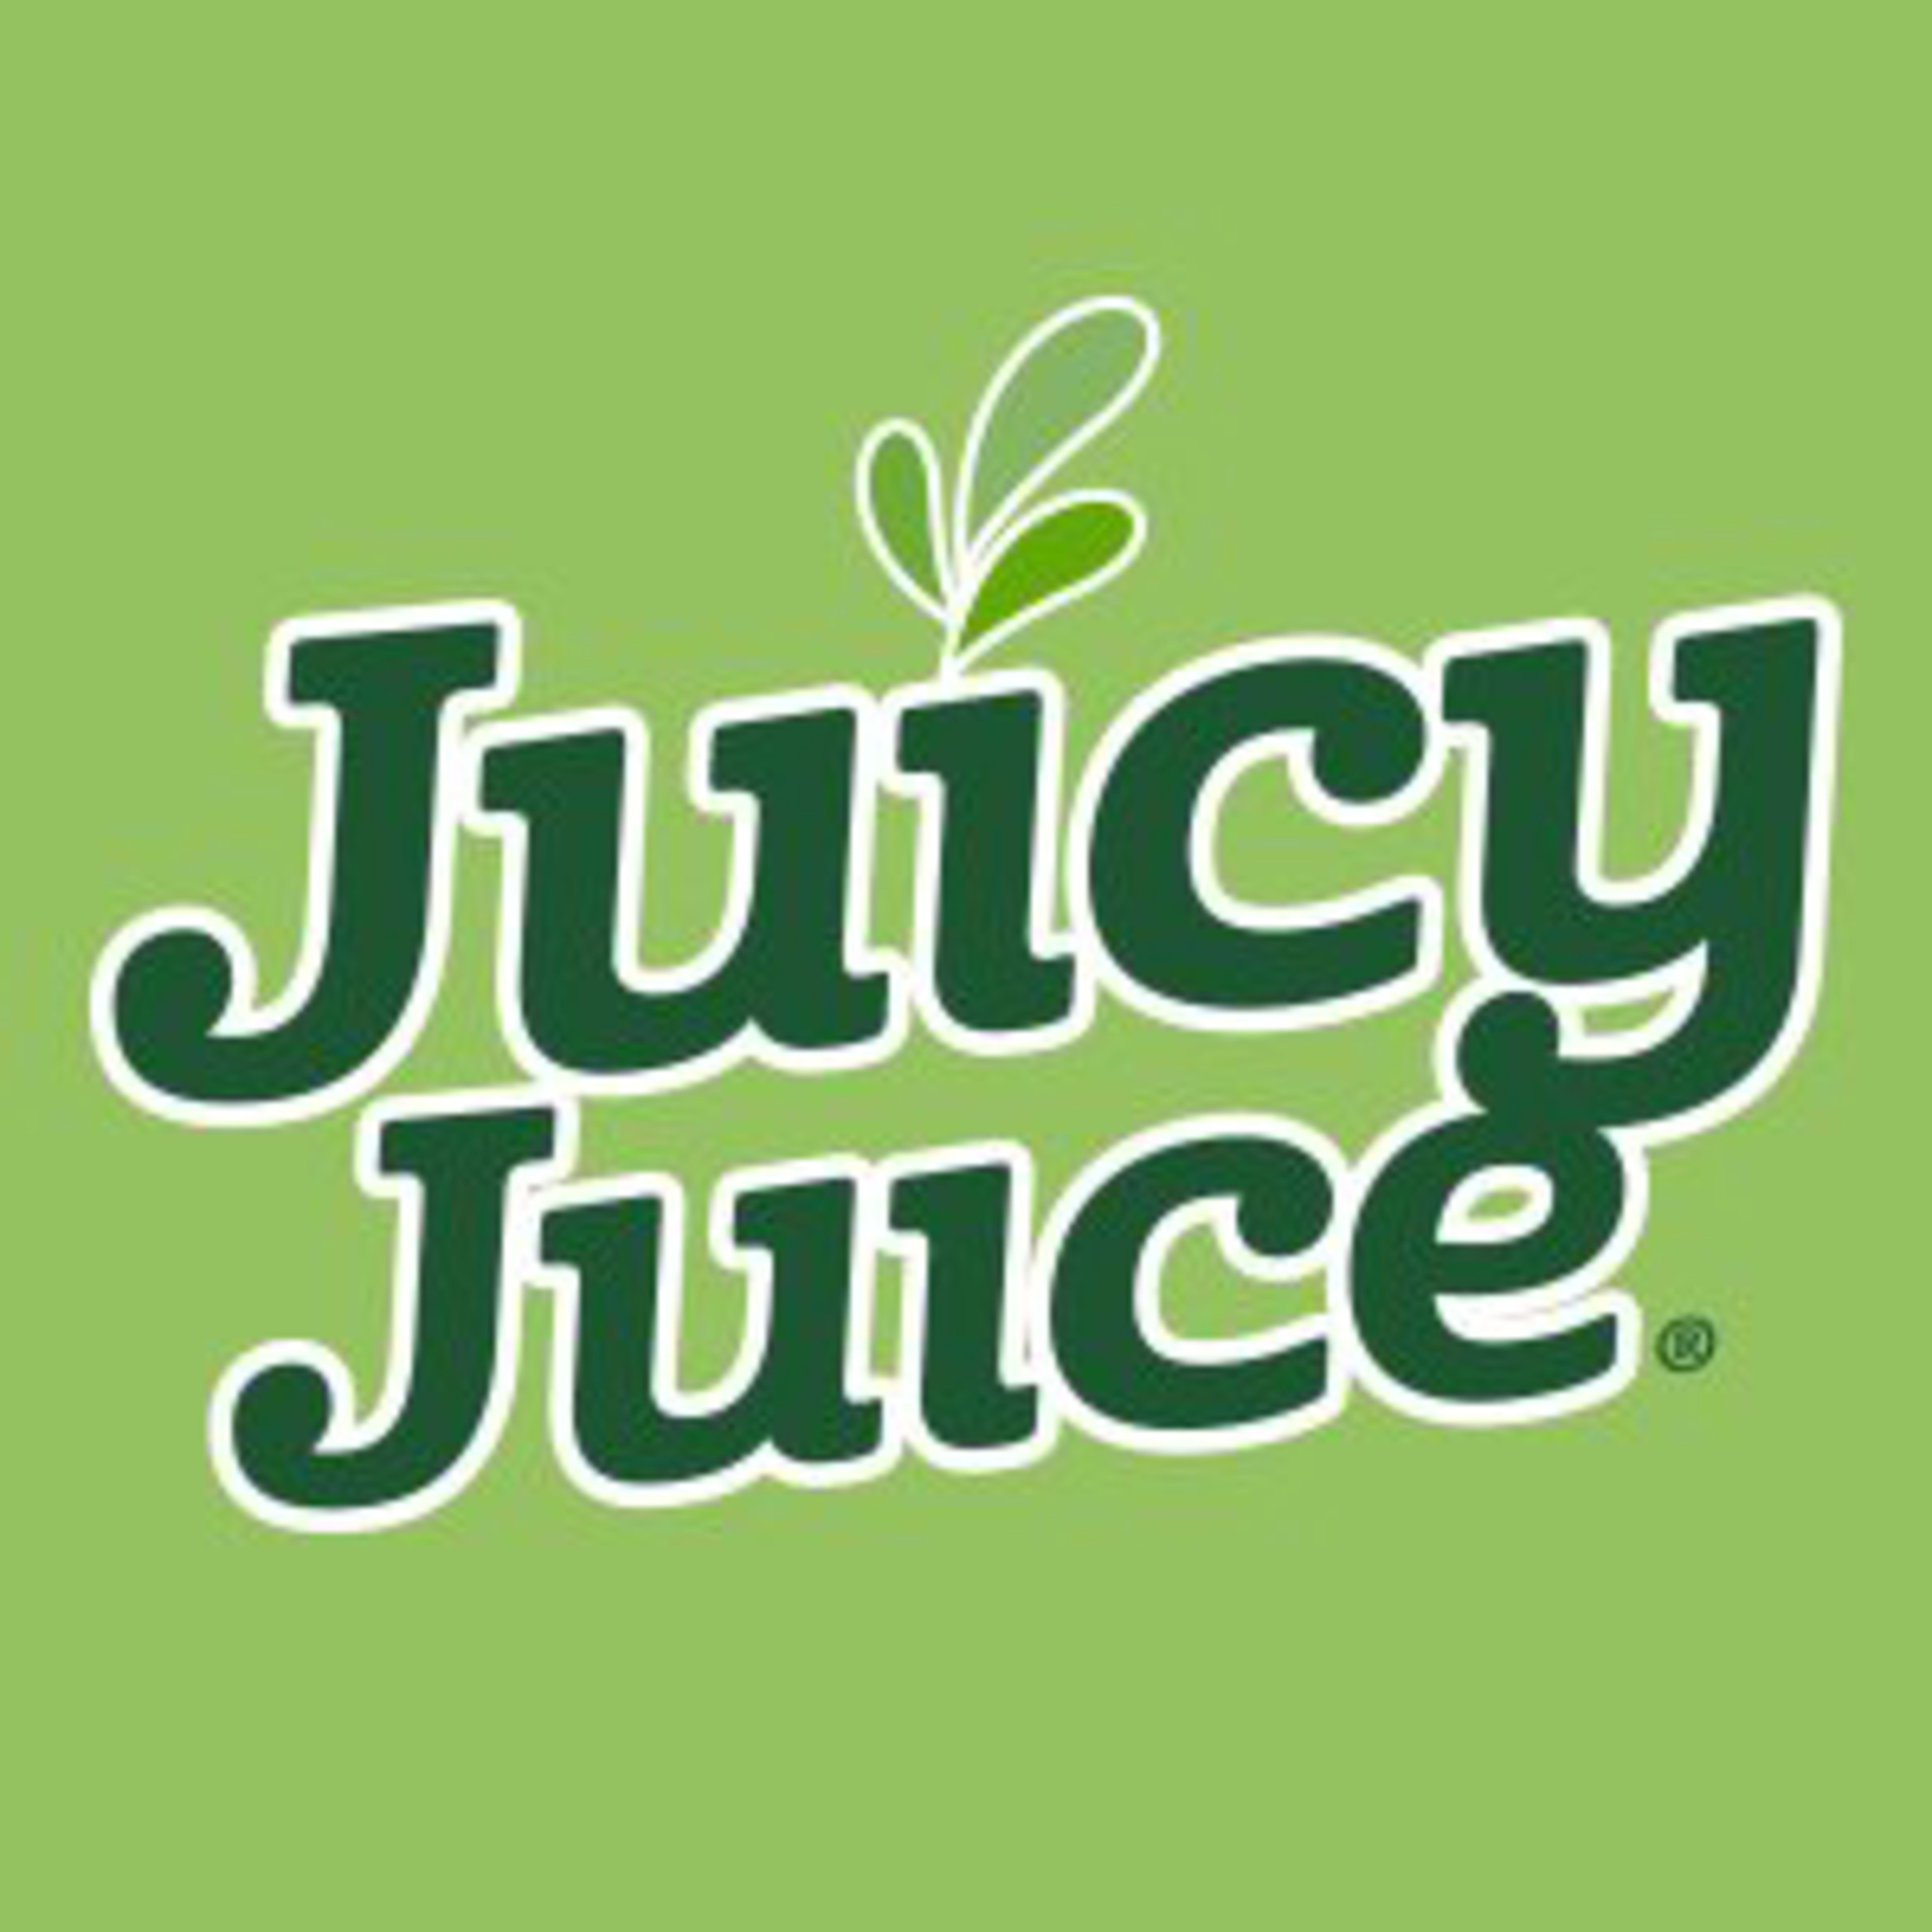 Juicy Juice Code